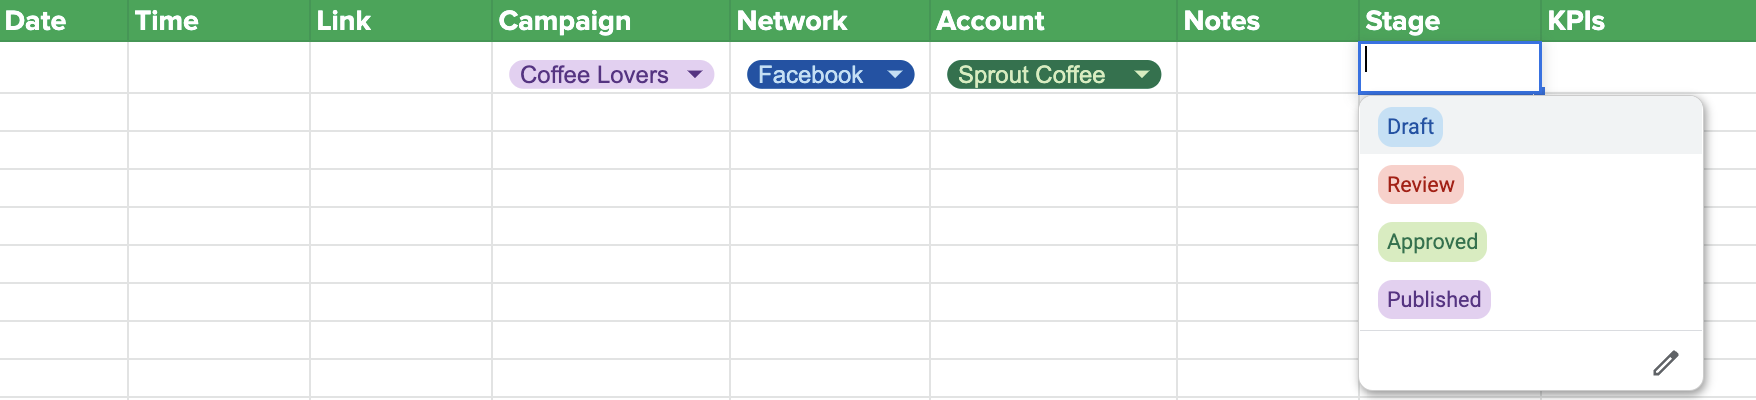 تصویری از یک الگوی تقویم رسانه‌های اجتماعی که منوهای کشویی را برای دسته‌هایی با طبقه‌بندی‌های تکراری نشان می‌دهد (مثال: شبکه رسانه‌های اجتماعی). 